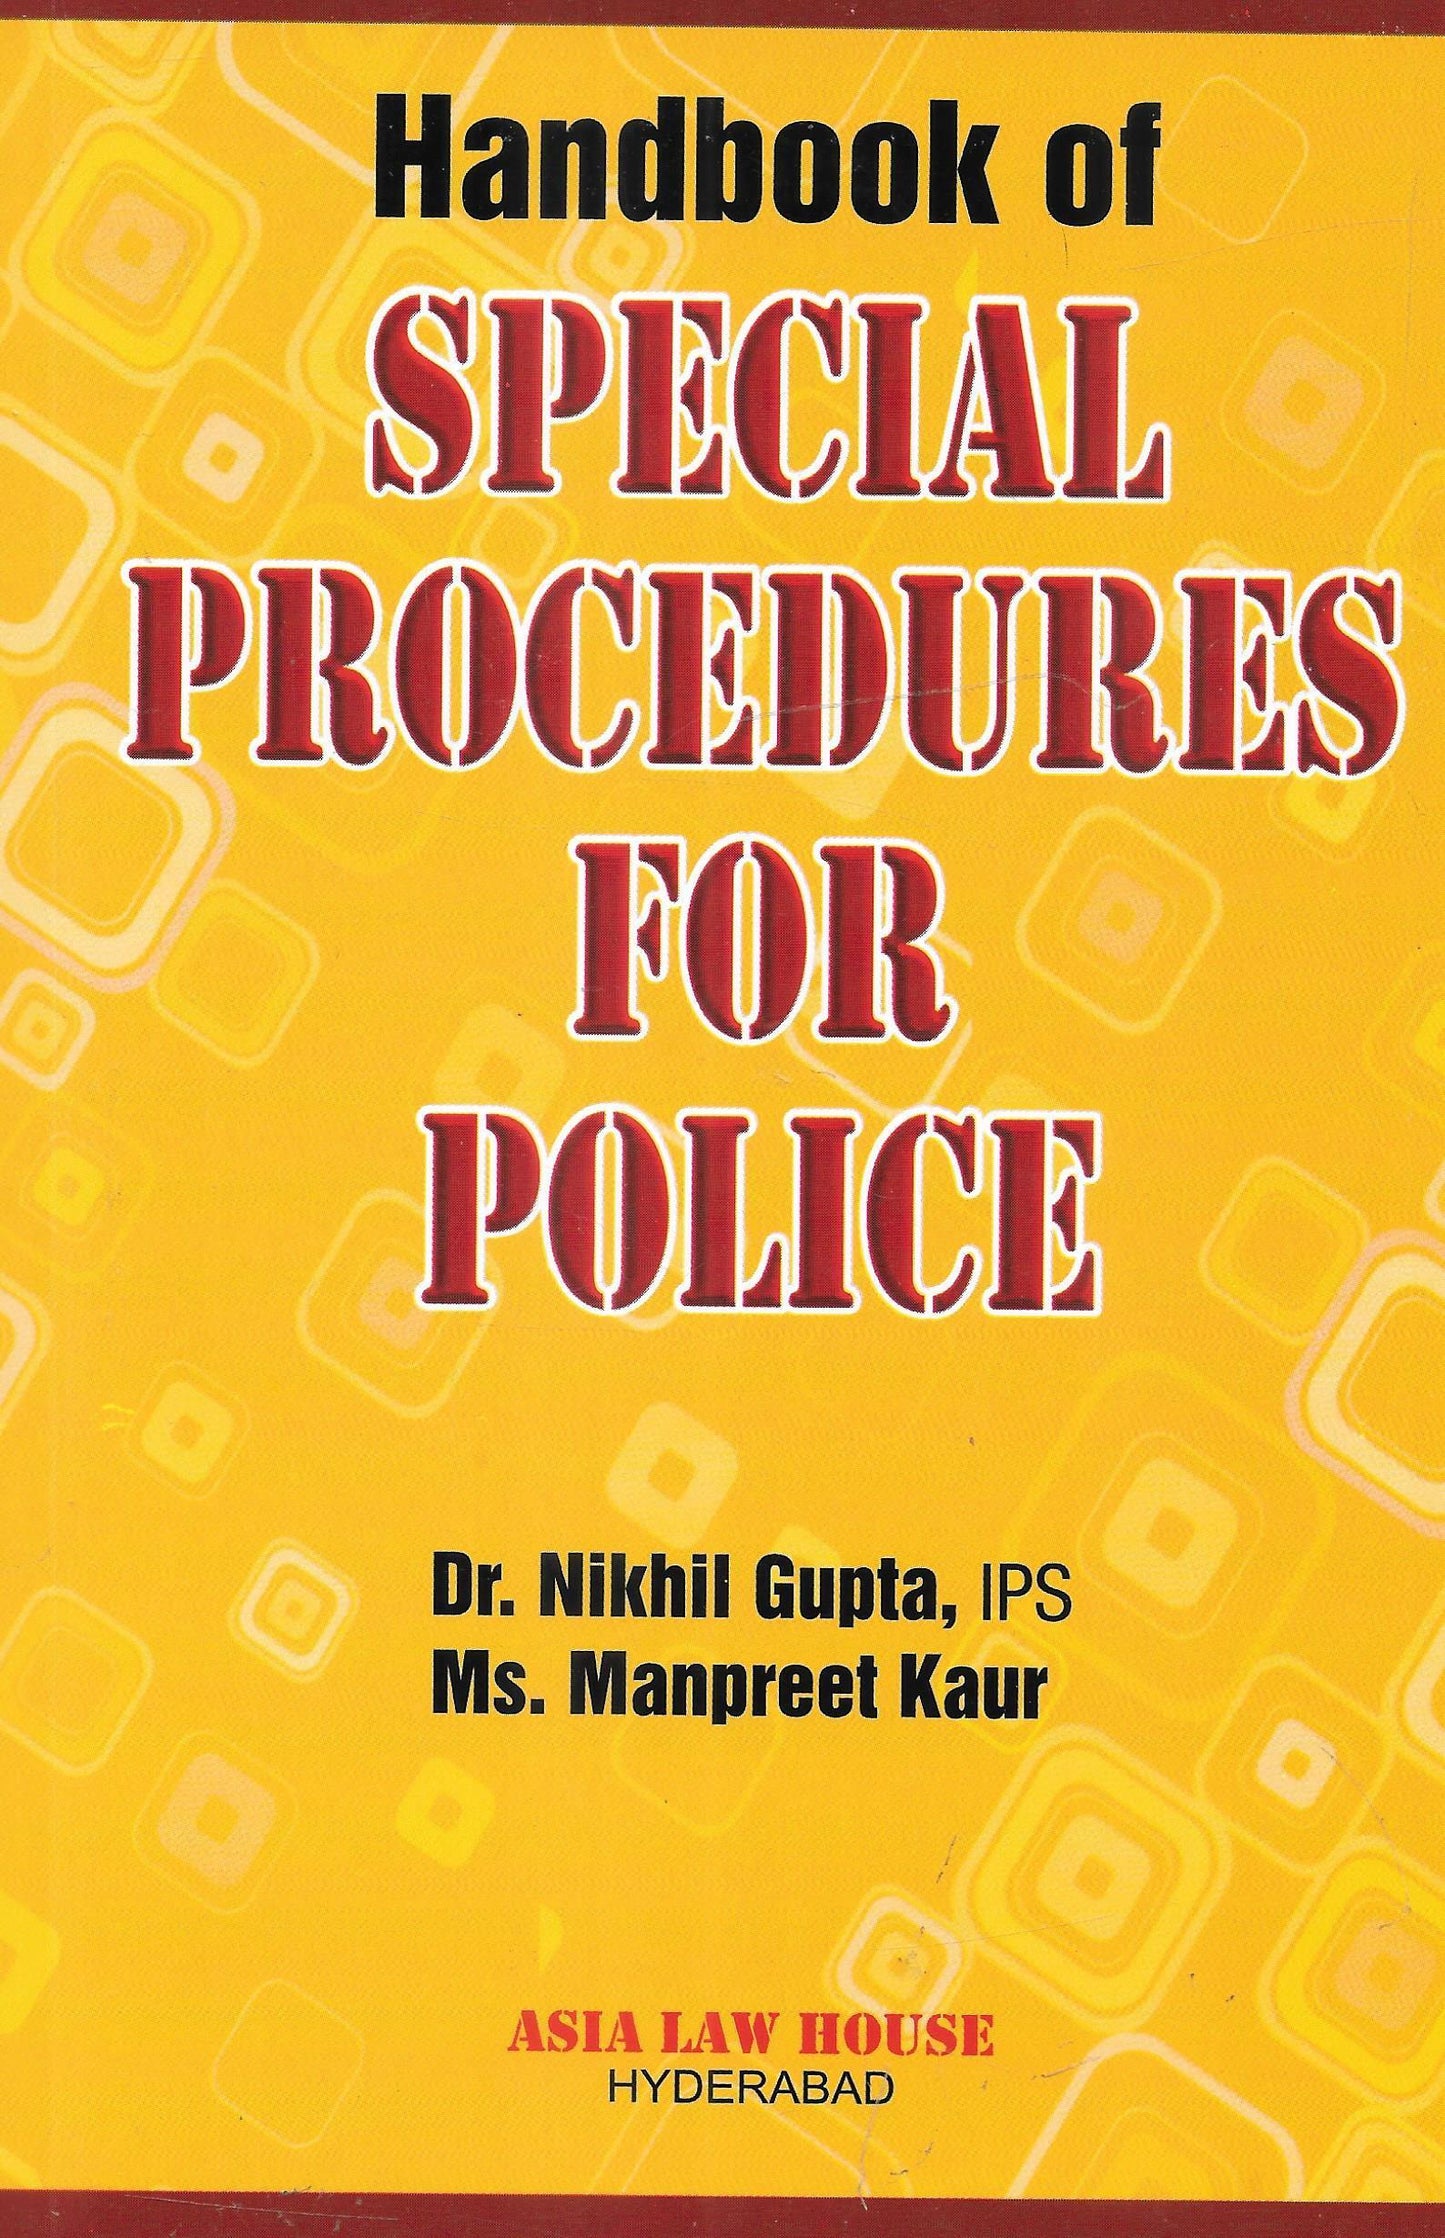 Handbook of Special Procedures for Police